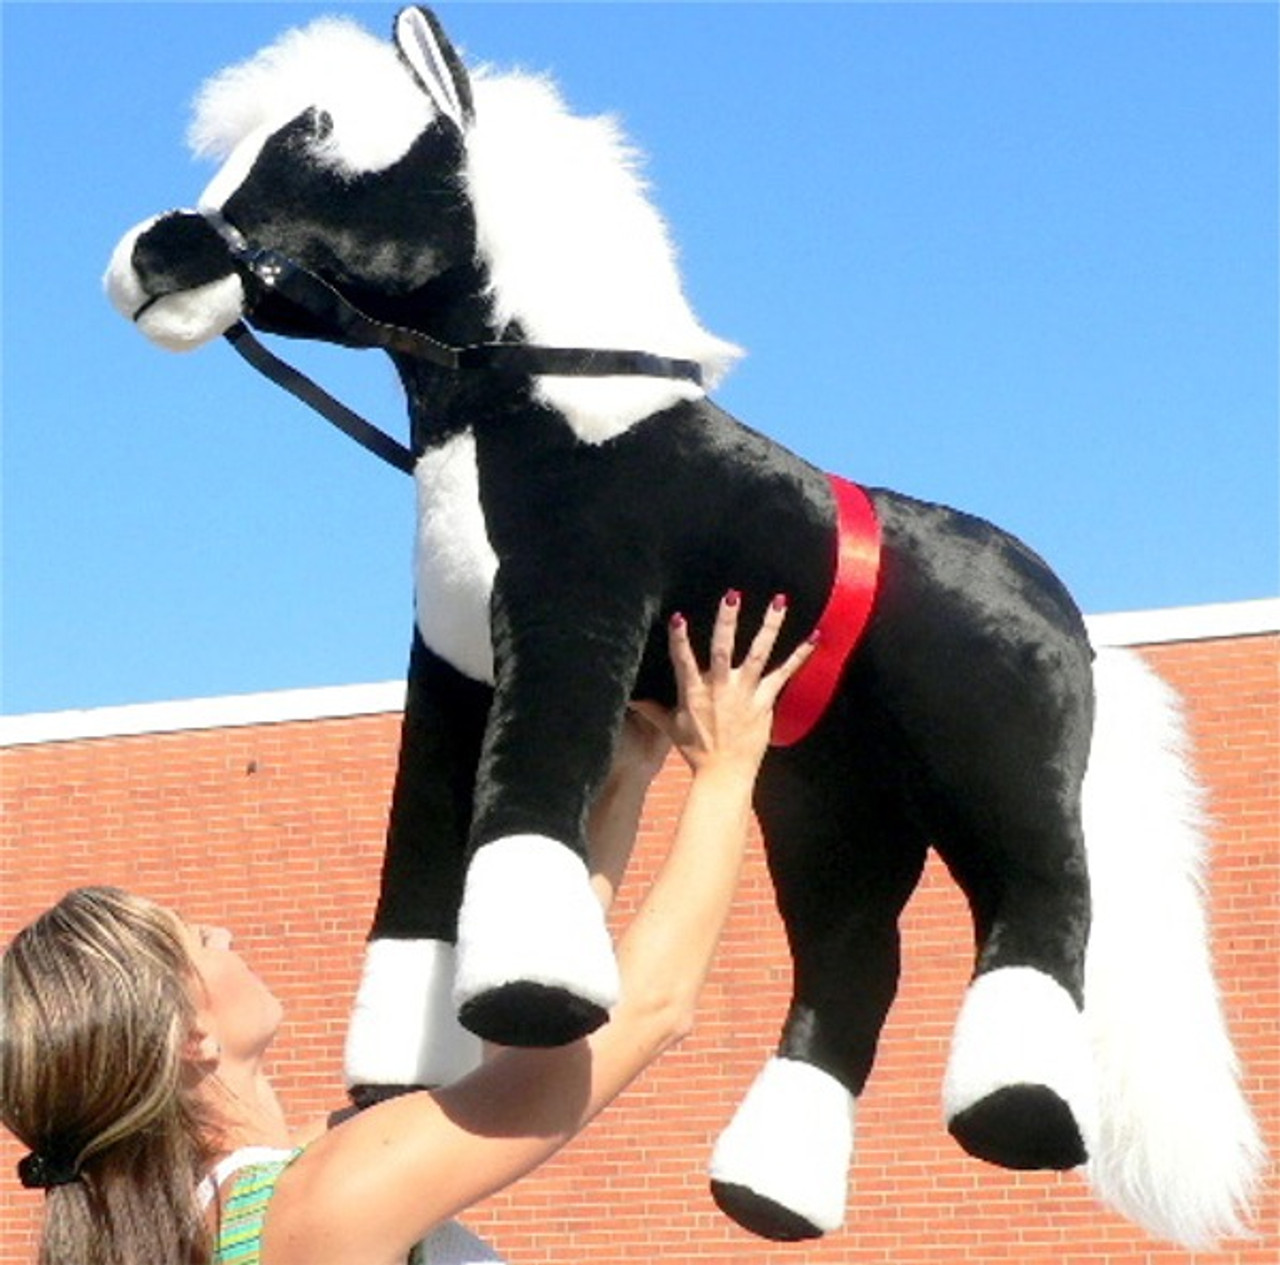 large stuffed animal horse